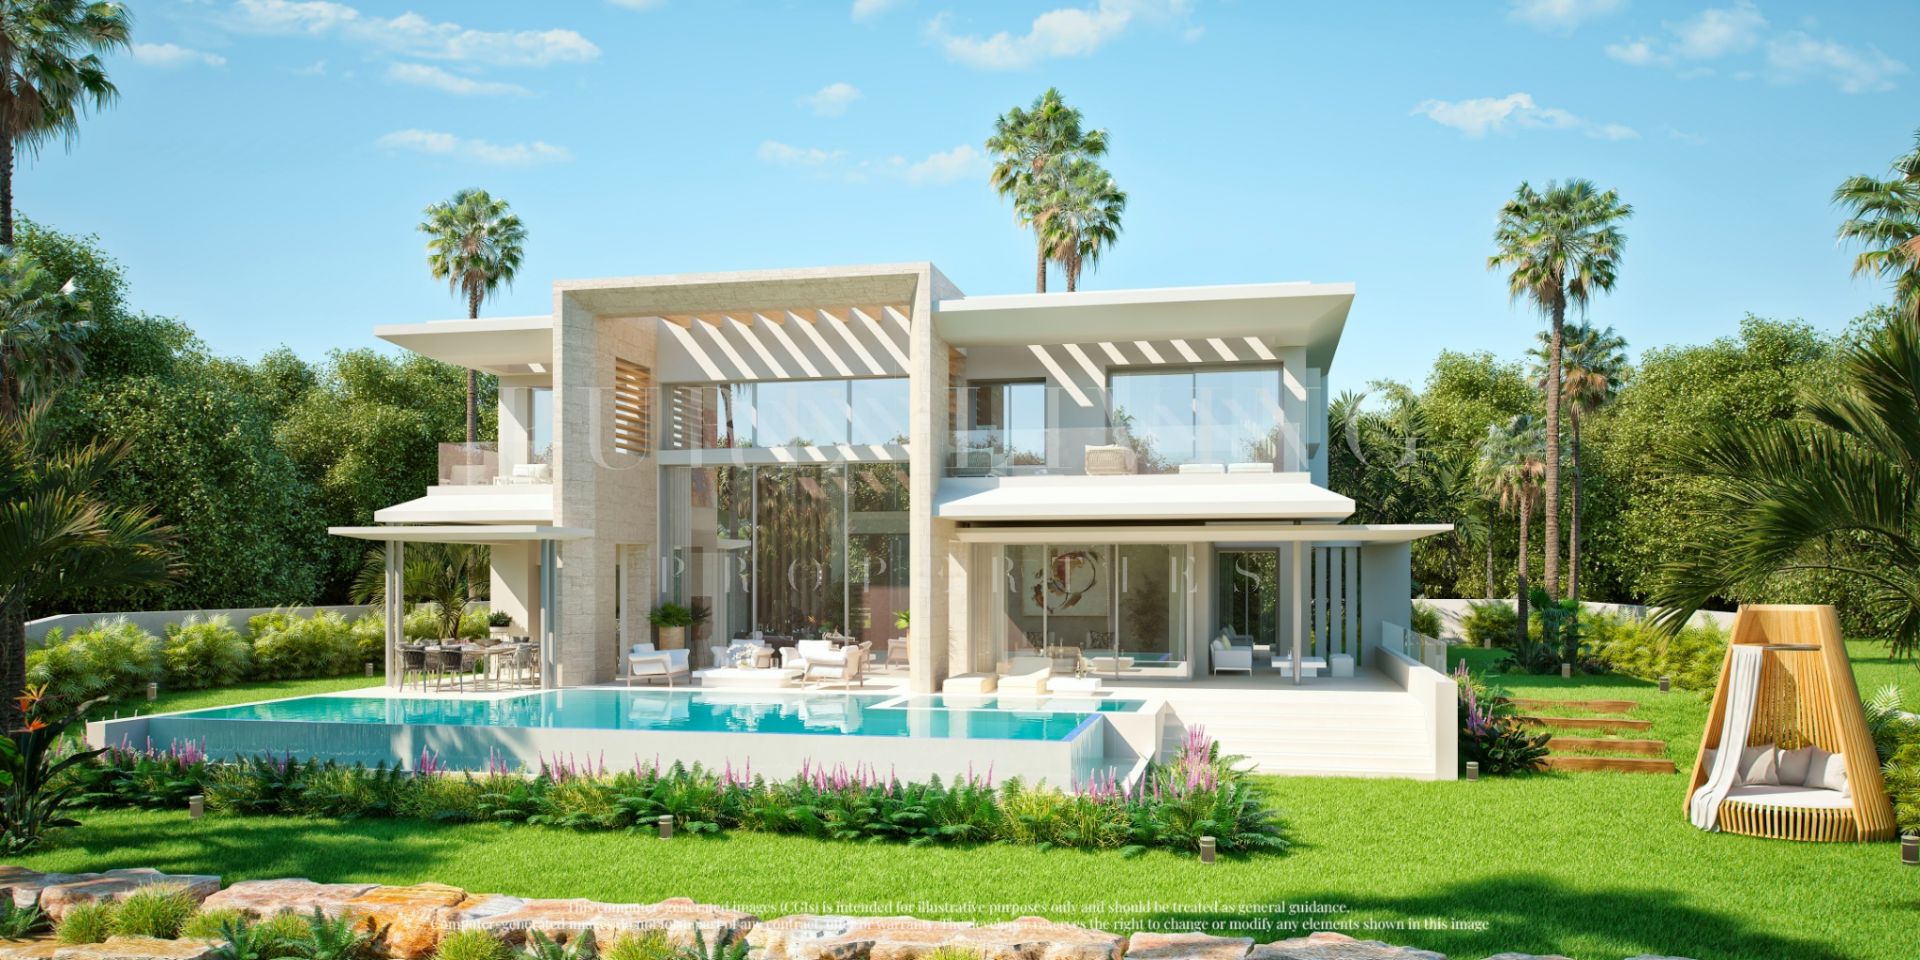 Uitzonderlijke villa met ongelooflijke uitzichten in de nieuwe gated community van luxe villa's